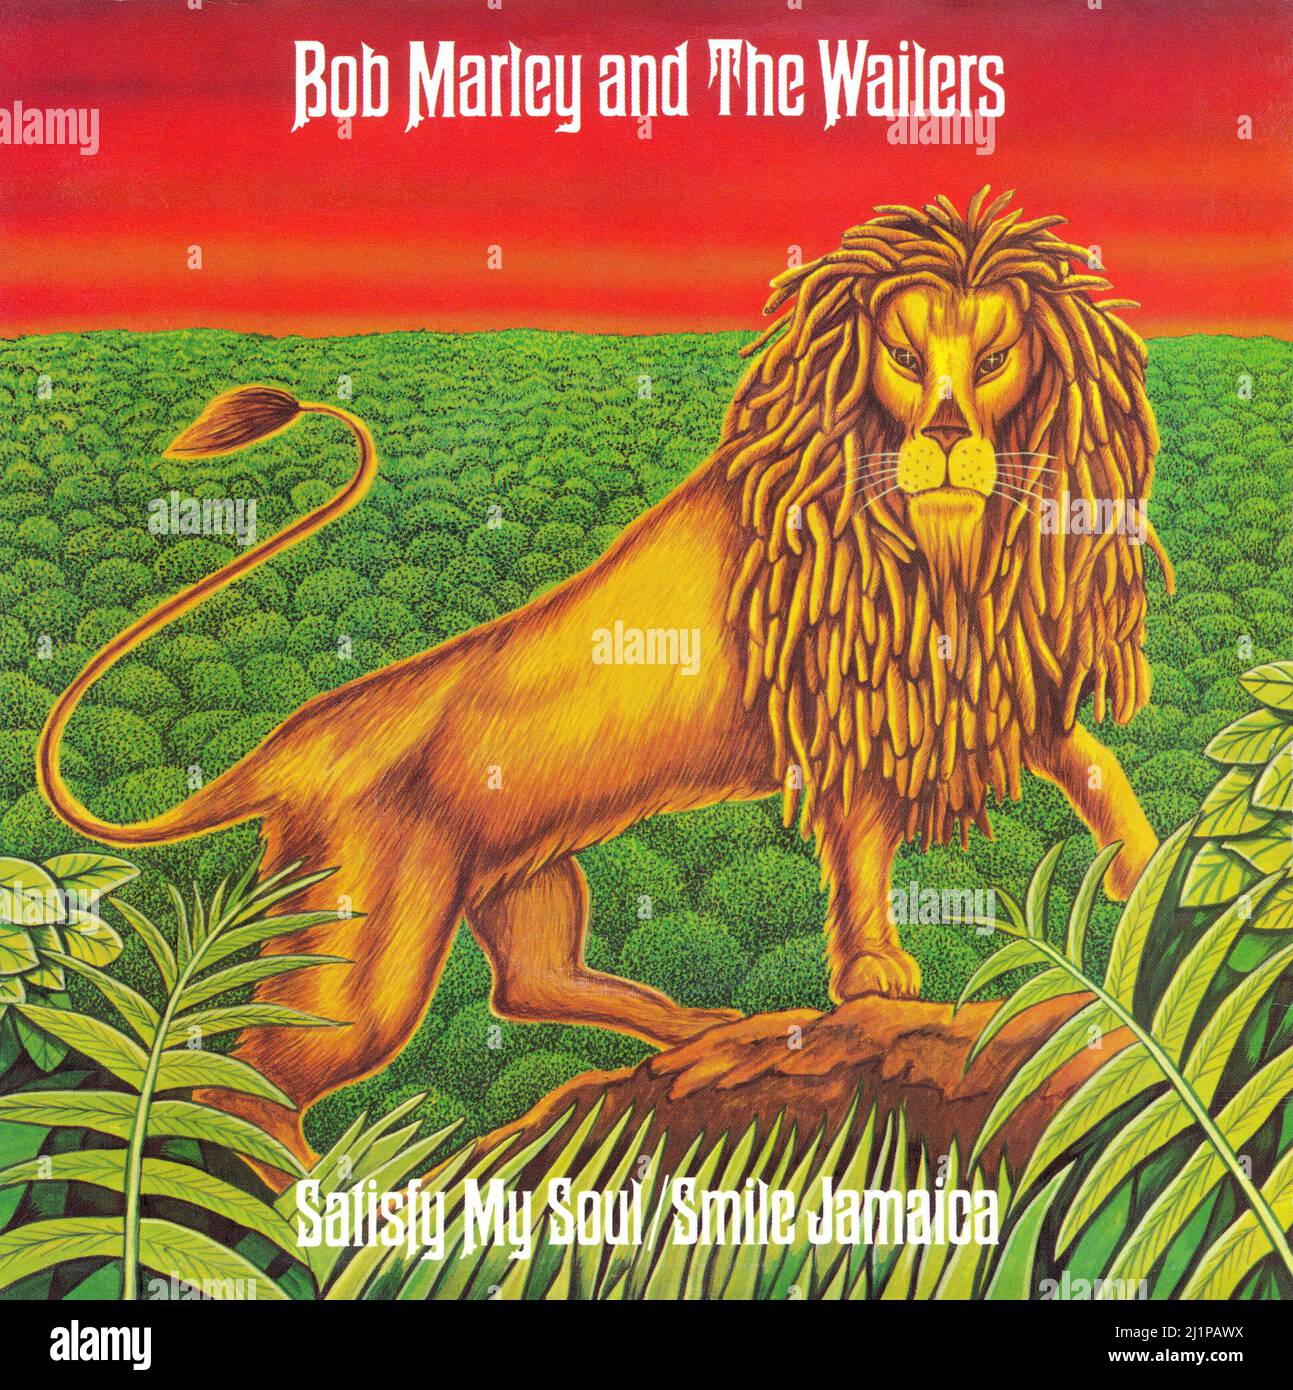 Frontcover der Schallplattenhülle für die UK 45 rpm Vinyl Single von Satisfy My Soul von Bob Marley und The Wailers. Herausgegeben auf dem Insel-Label am 26.. Mai 1978. Geschrieben von Bob Marley und produziert von Bob Marley und den Wailers. Stockfoto